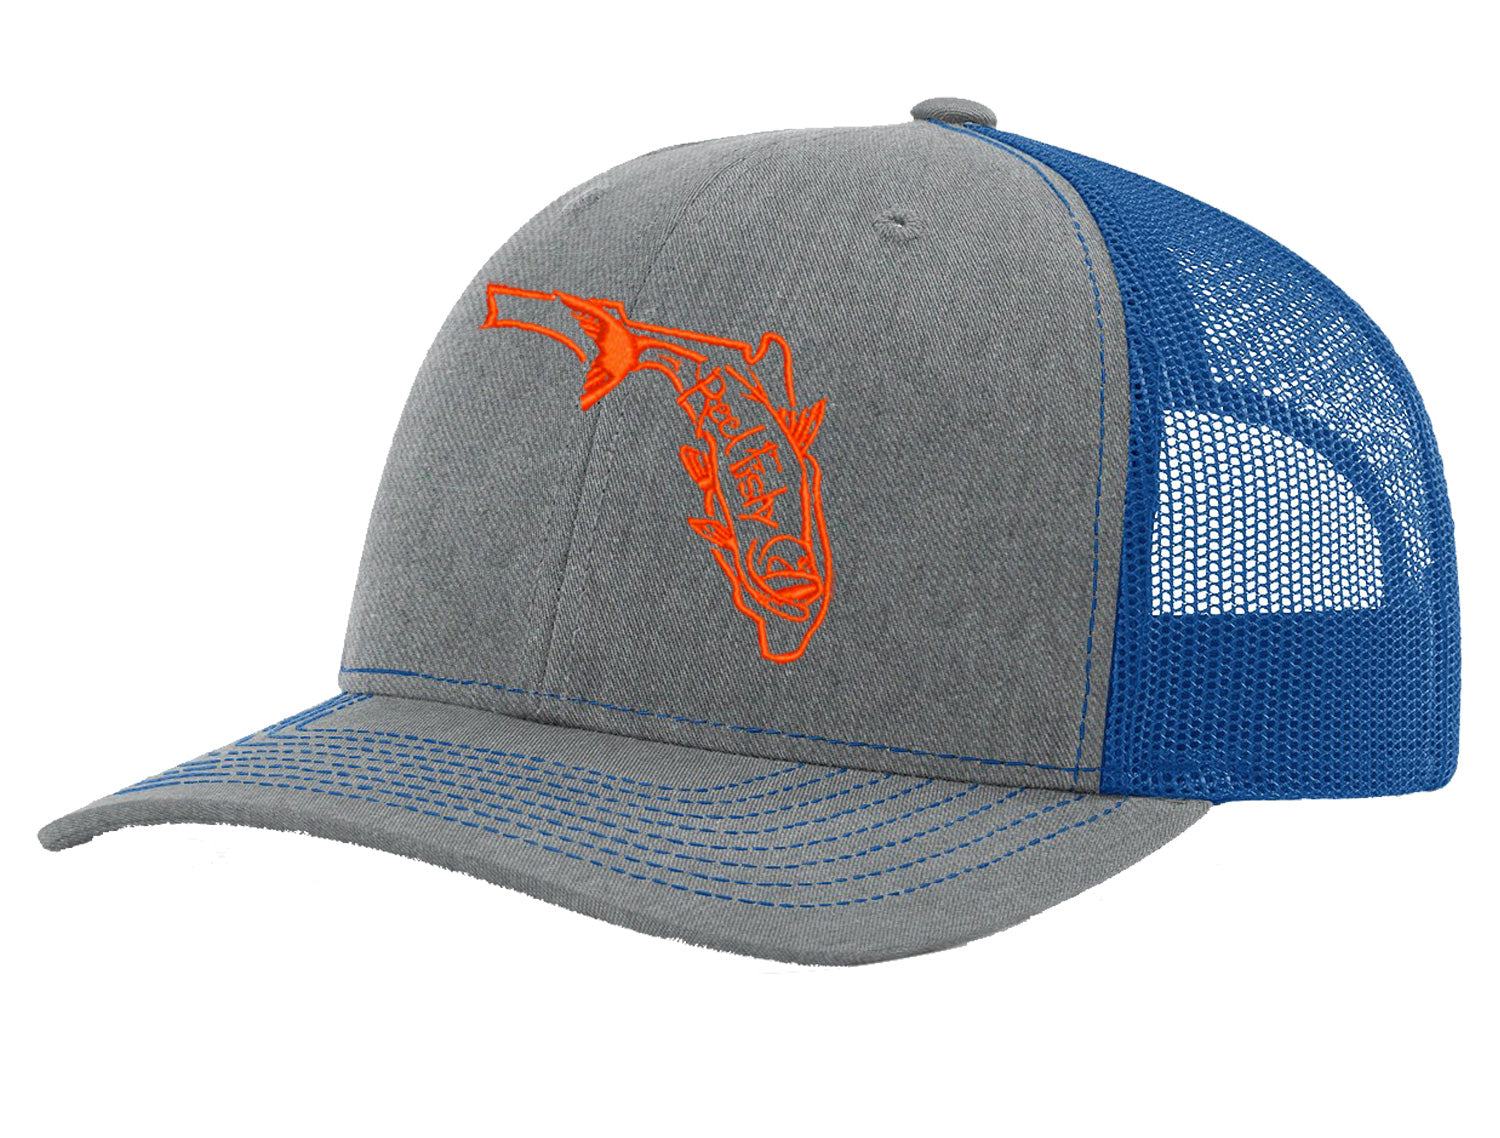 State of Florida Tarpon Reel Fishy Logo - Heather Gray/Royal Trucker Hat w/Orange Tarpon Logo